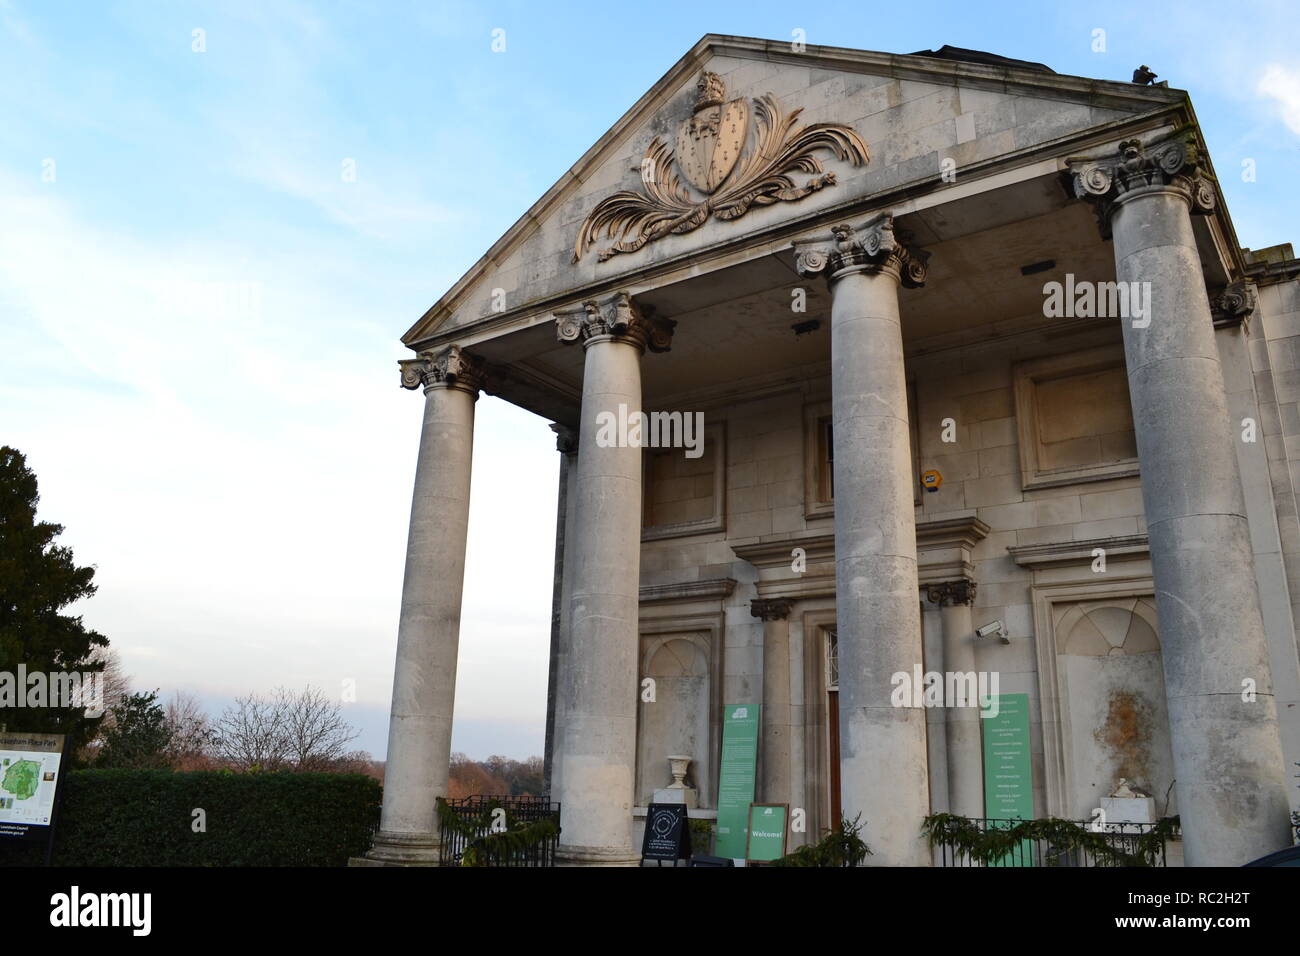 El redesarrollo de Beckenham Park Place, el sureste de Londres, enero de 2018. La fachada de la mansión palaciega de Georgia con sus pilares Foto de stock